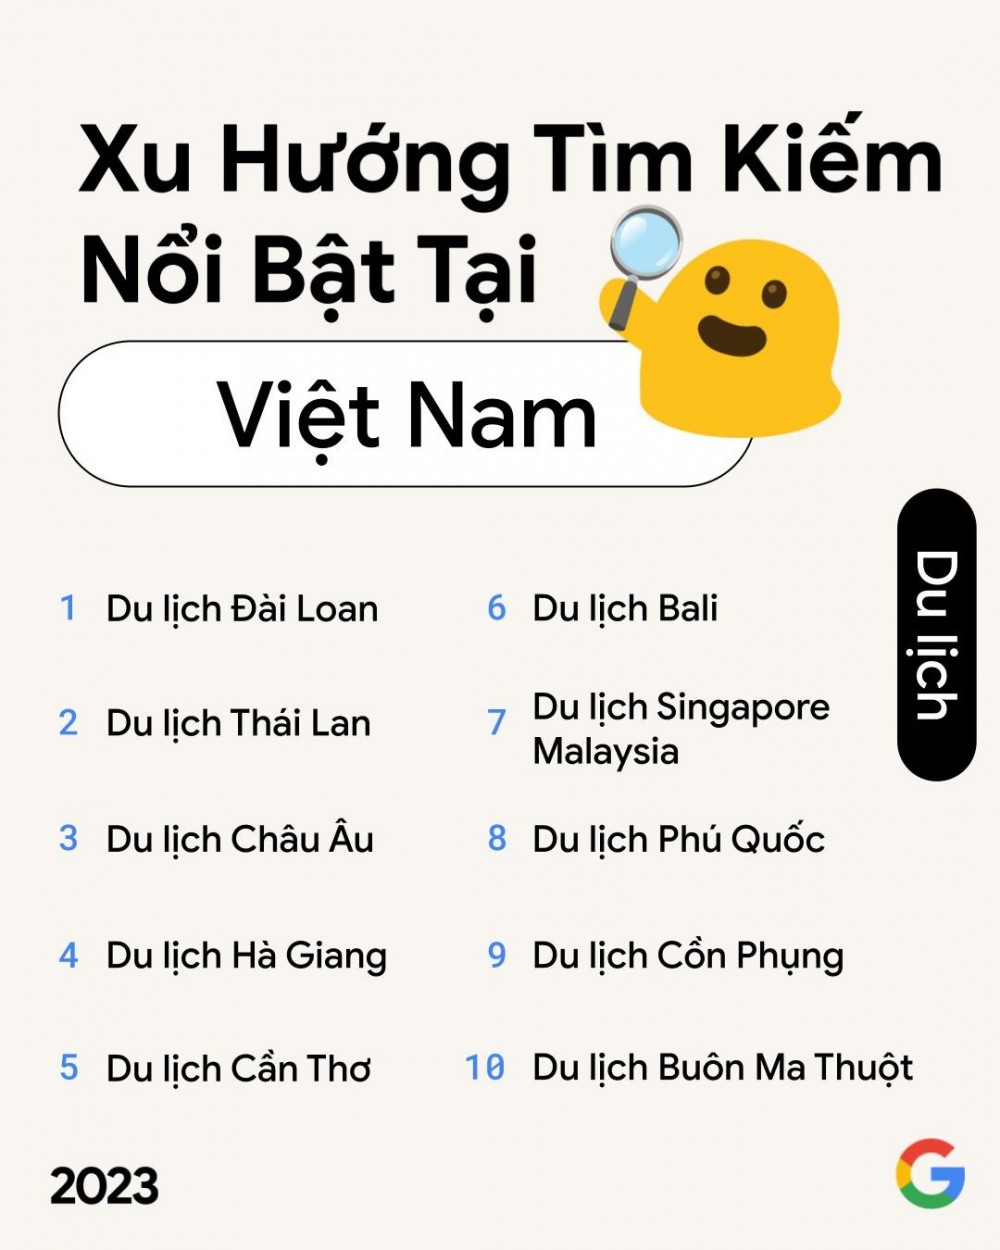 Người Việt tìm kiếm gì nhiều nhất năm qua?